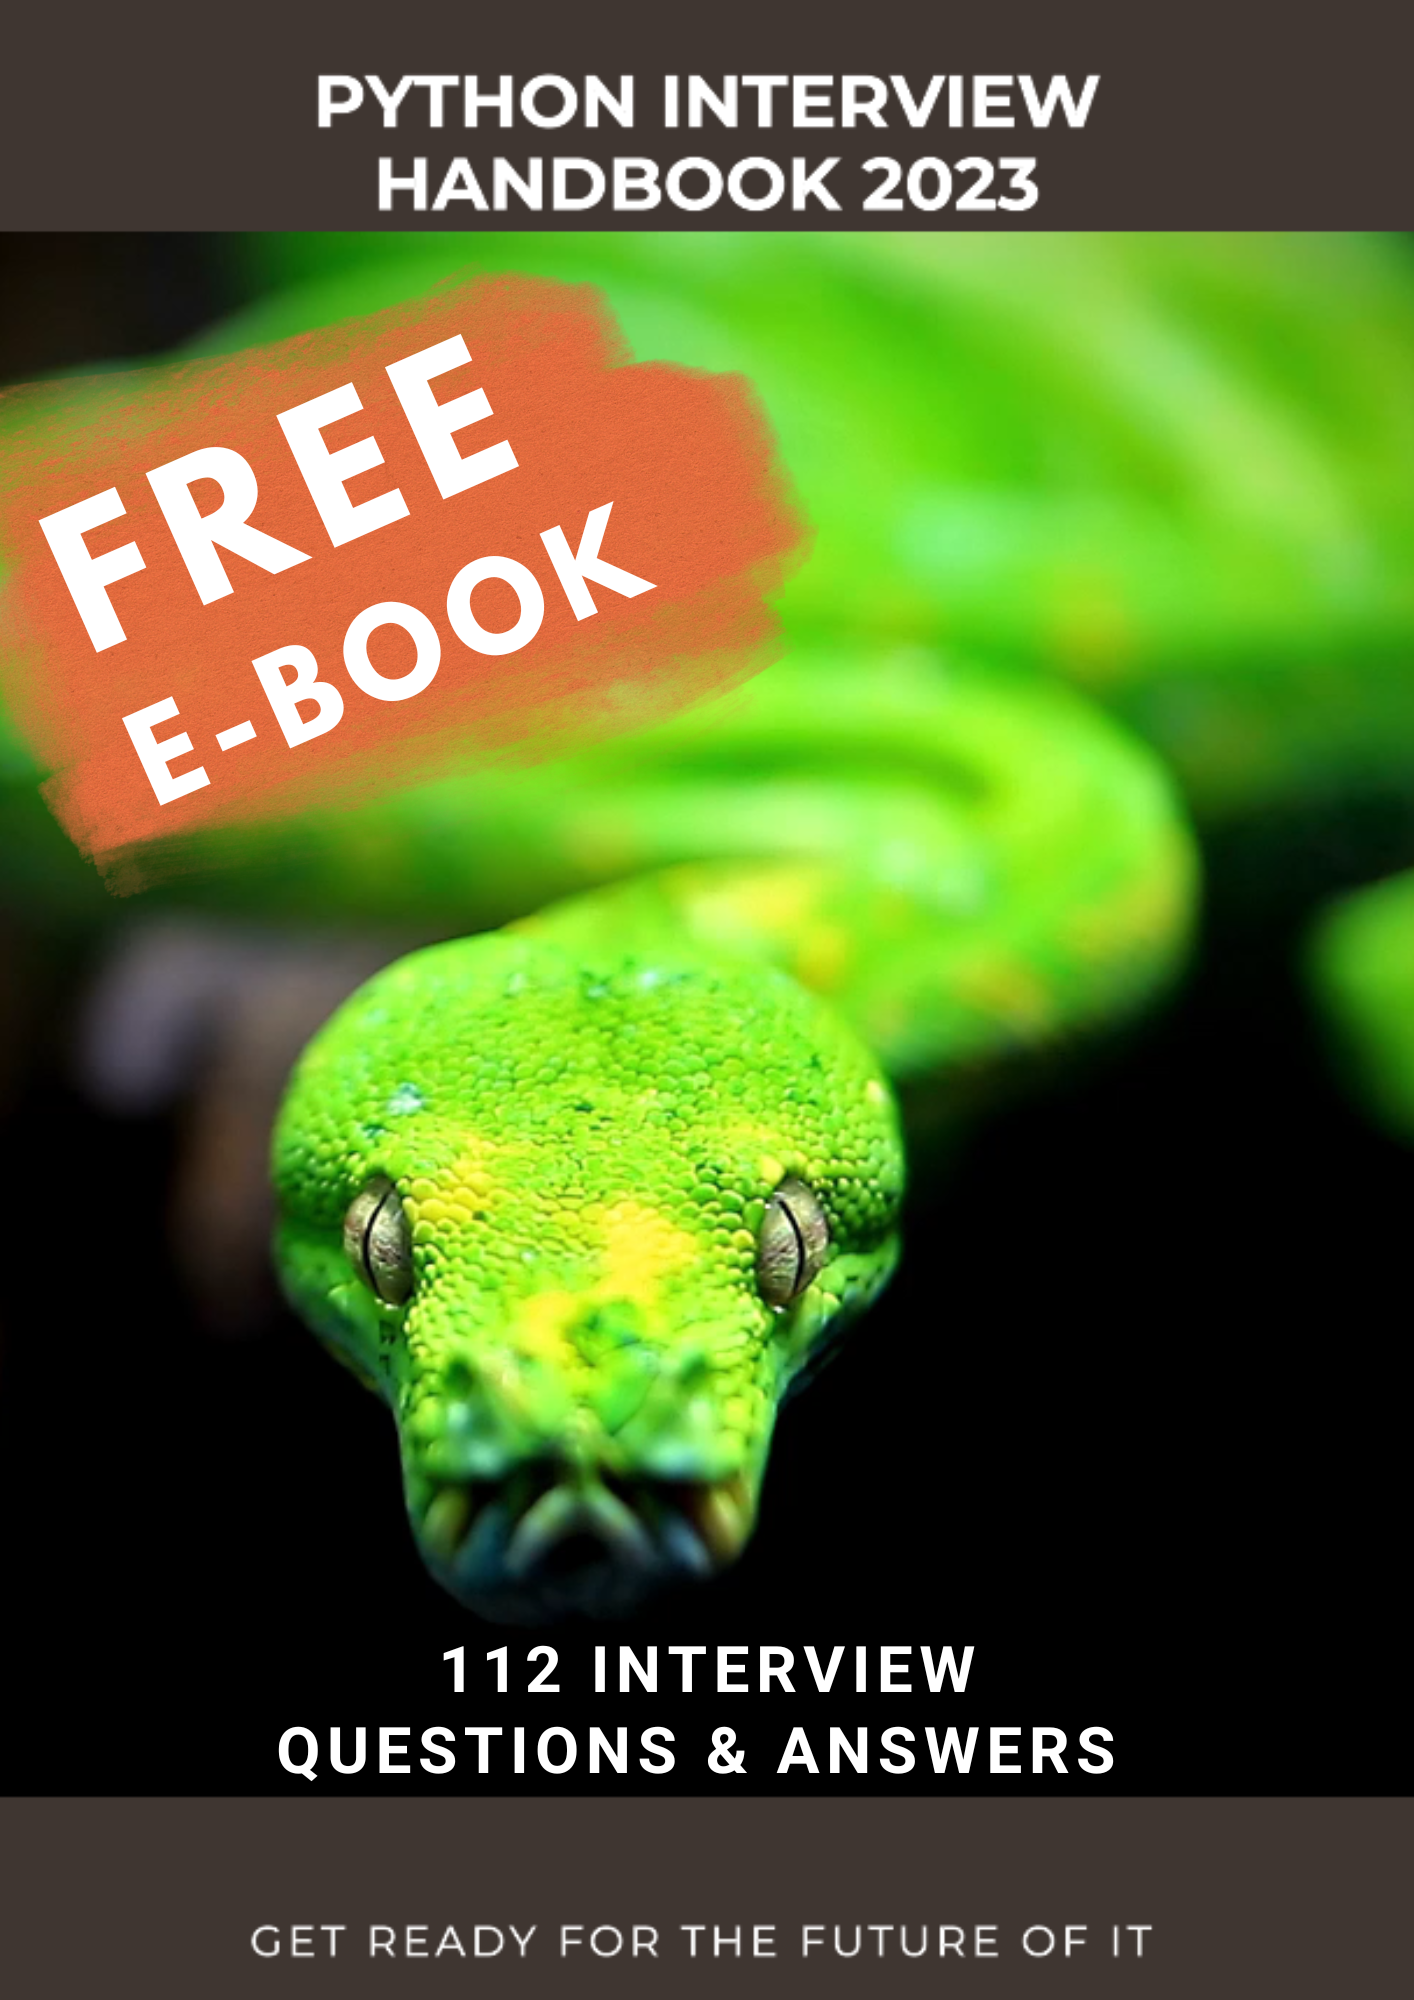 The Python Interview Handbook 2023 - FREE BOOK 112+ Q&A